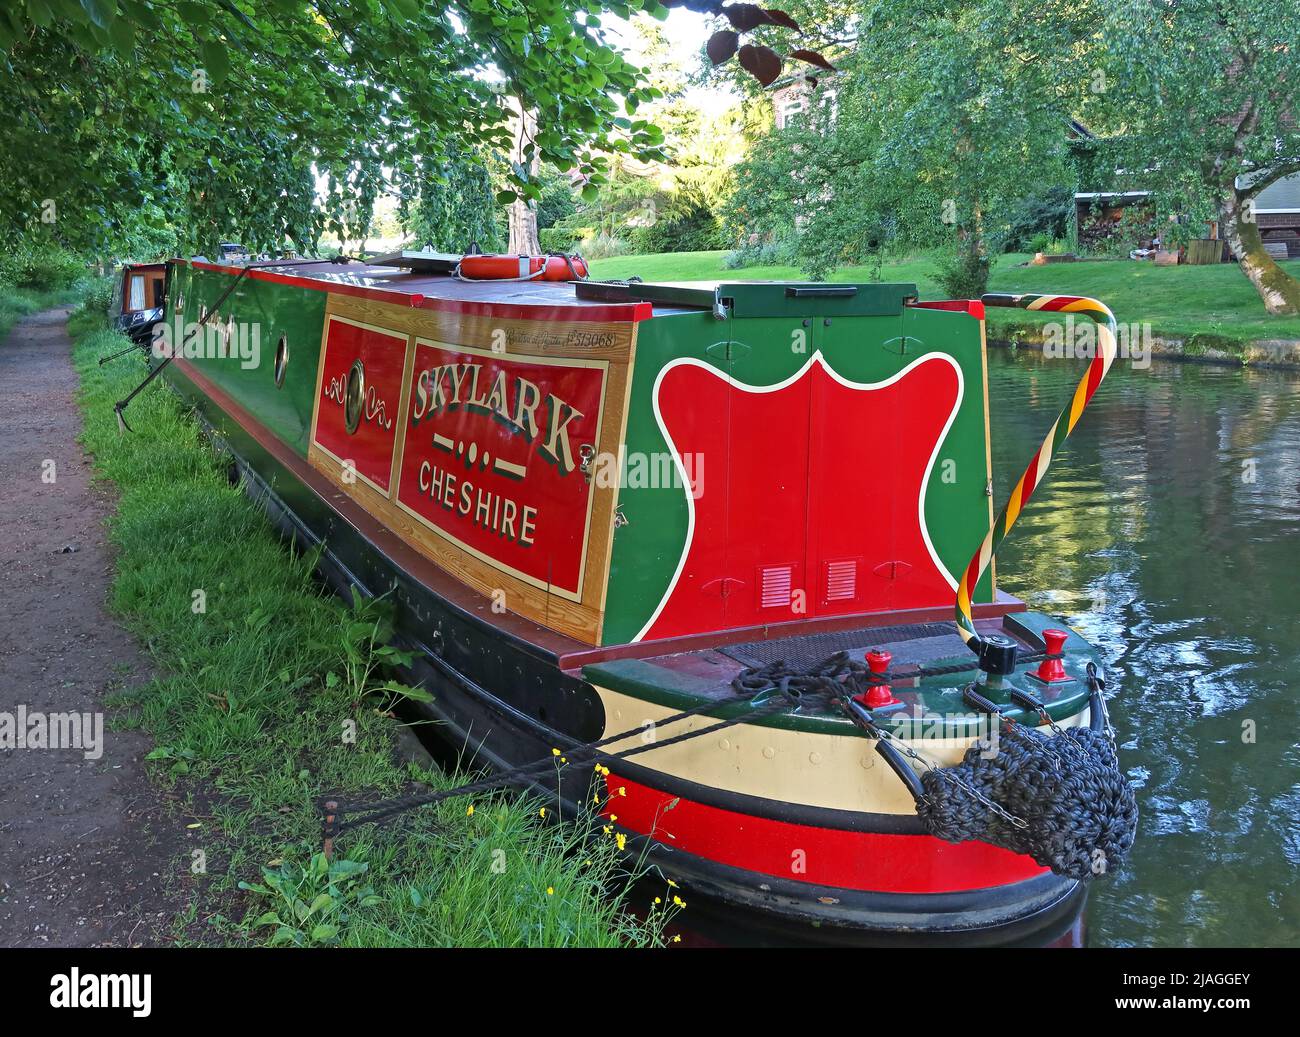 Barge traditionnelle Skylark Cheshire, attachée, amarrée sur le canal de Bridgewater, Stockton Heath, Warrington, Cheshire, Angleterre, ROYAUME-UNI, WA4 6HN Banque D'Images